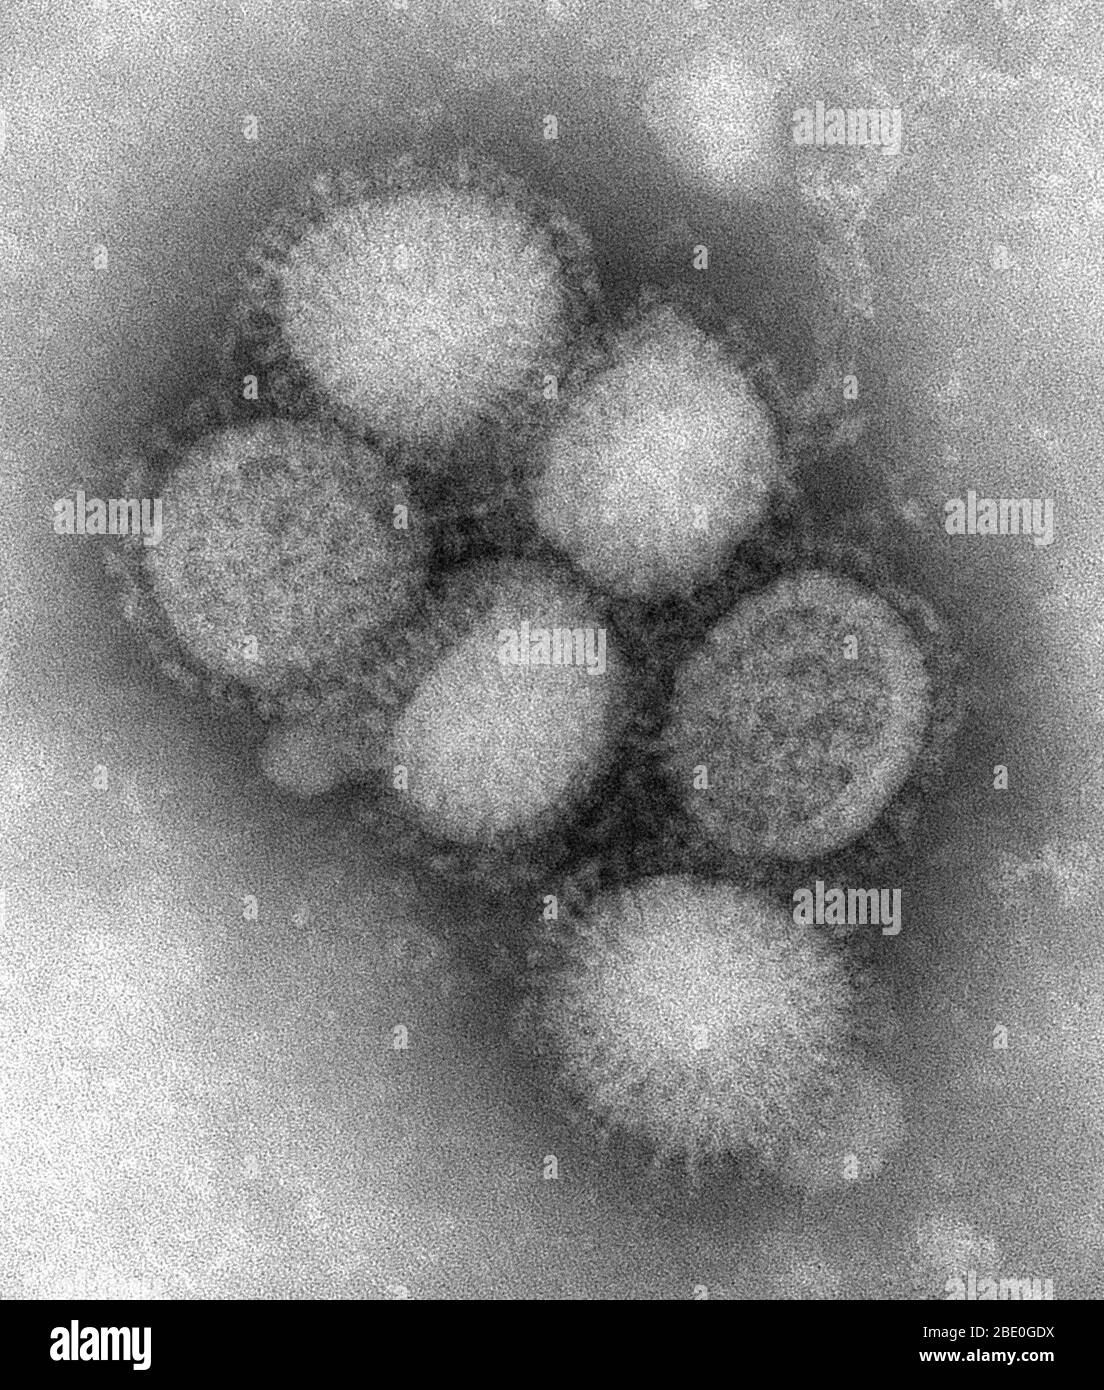 Micrografía electrónica de transmisión con tinción negativa (TEM) de parte de la morfología ultraestructural del virus de la gripe porcina A/CA/4/09. La gripe porcina (gripe porcina) es una enfermedad respiratoria de los cerdos causada por el virus de la influenza tipo A que causa brotes de influenza en los cerdos. Los virus de la gripe porcina causan altos niveles de enfermedad y bajas tasas de mortalidad en los cerdos. Los virus de la influenza porcina pueden circular entre los cerdos durante todo el año, pero la mayoría de los brotes ocurren durante los meses de otoño e invierno similares a los brotes en humanos. El virus de la gripe porcina clásica (un virus H1N1 de tipo a) fue el primer isol Foto de stock